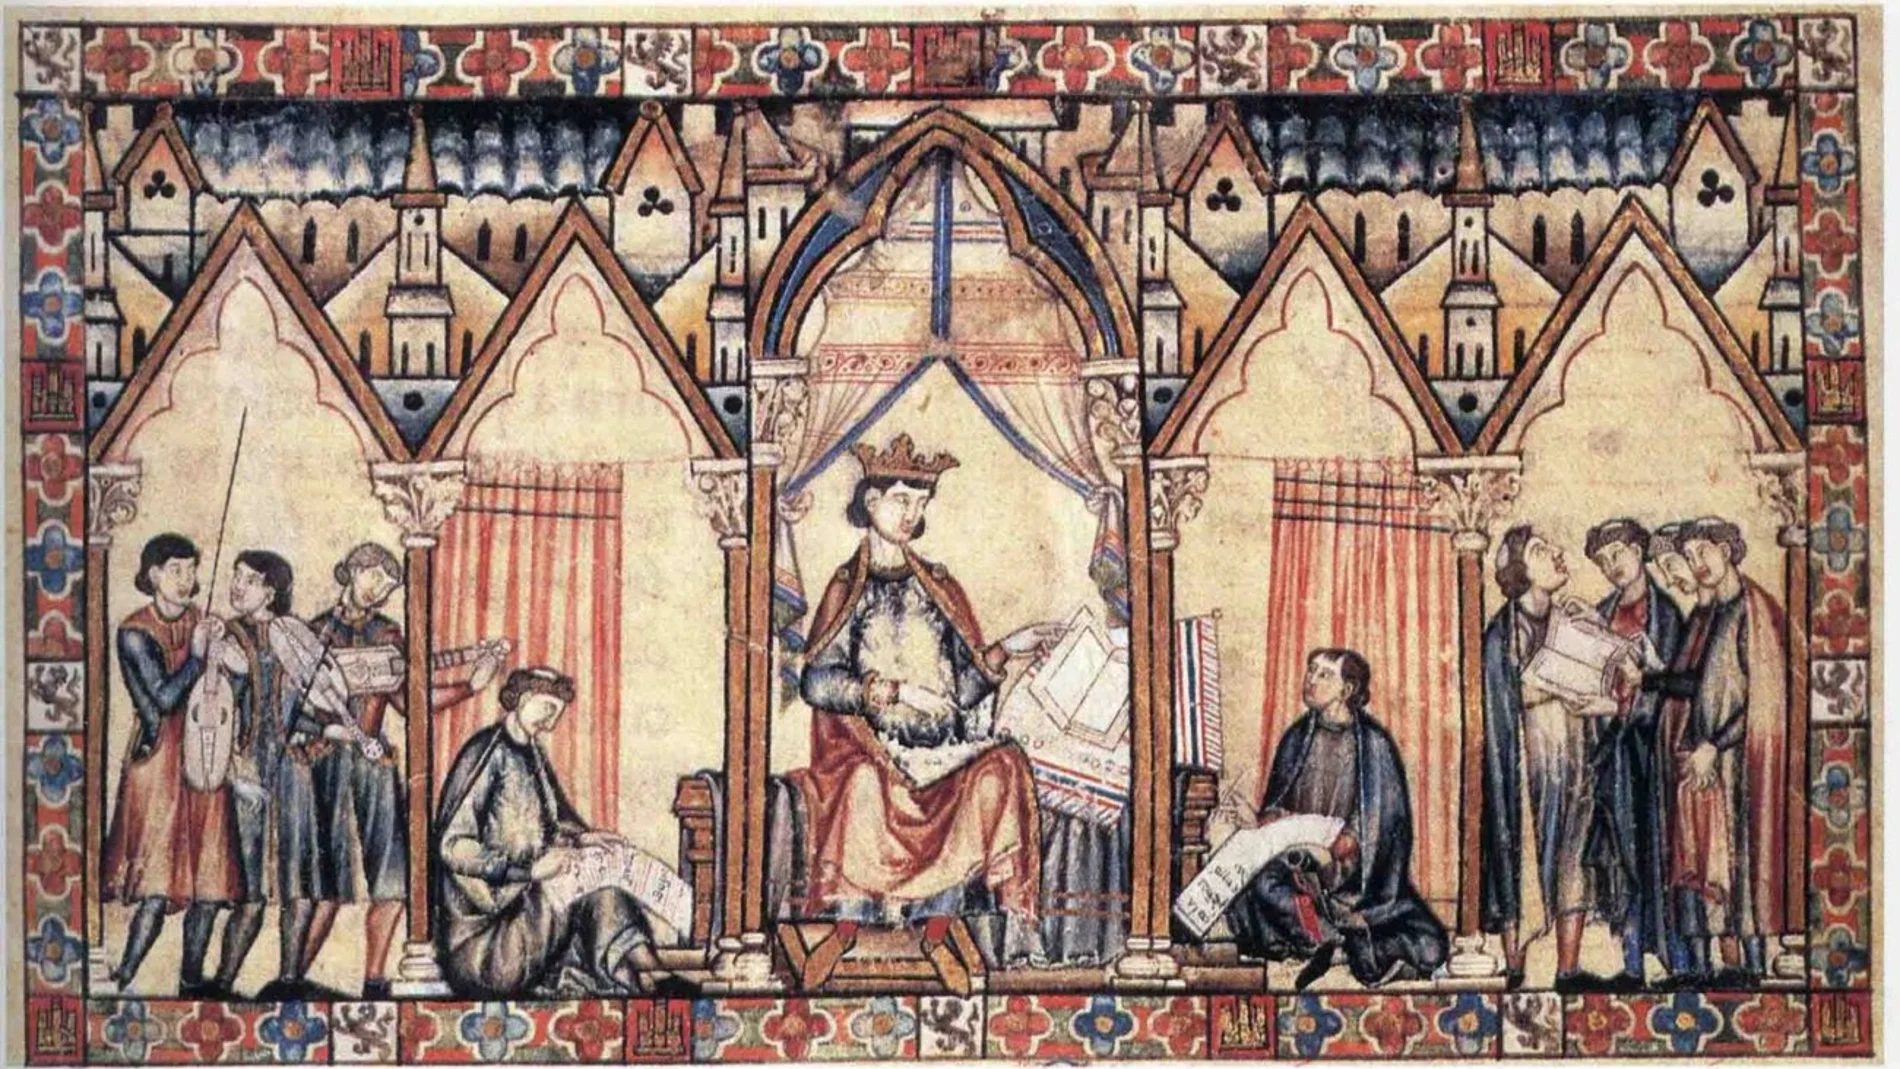 Una miniatura de las Cantigas de Santa María en donde se puede observar a Alfonso X el Sabio dictando